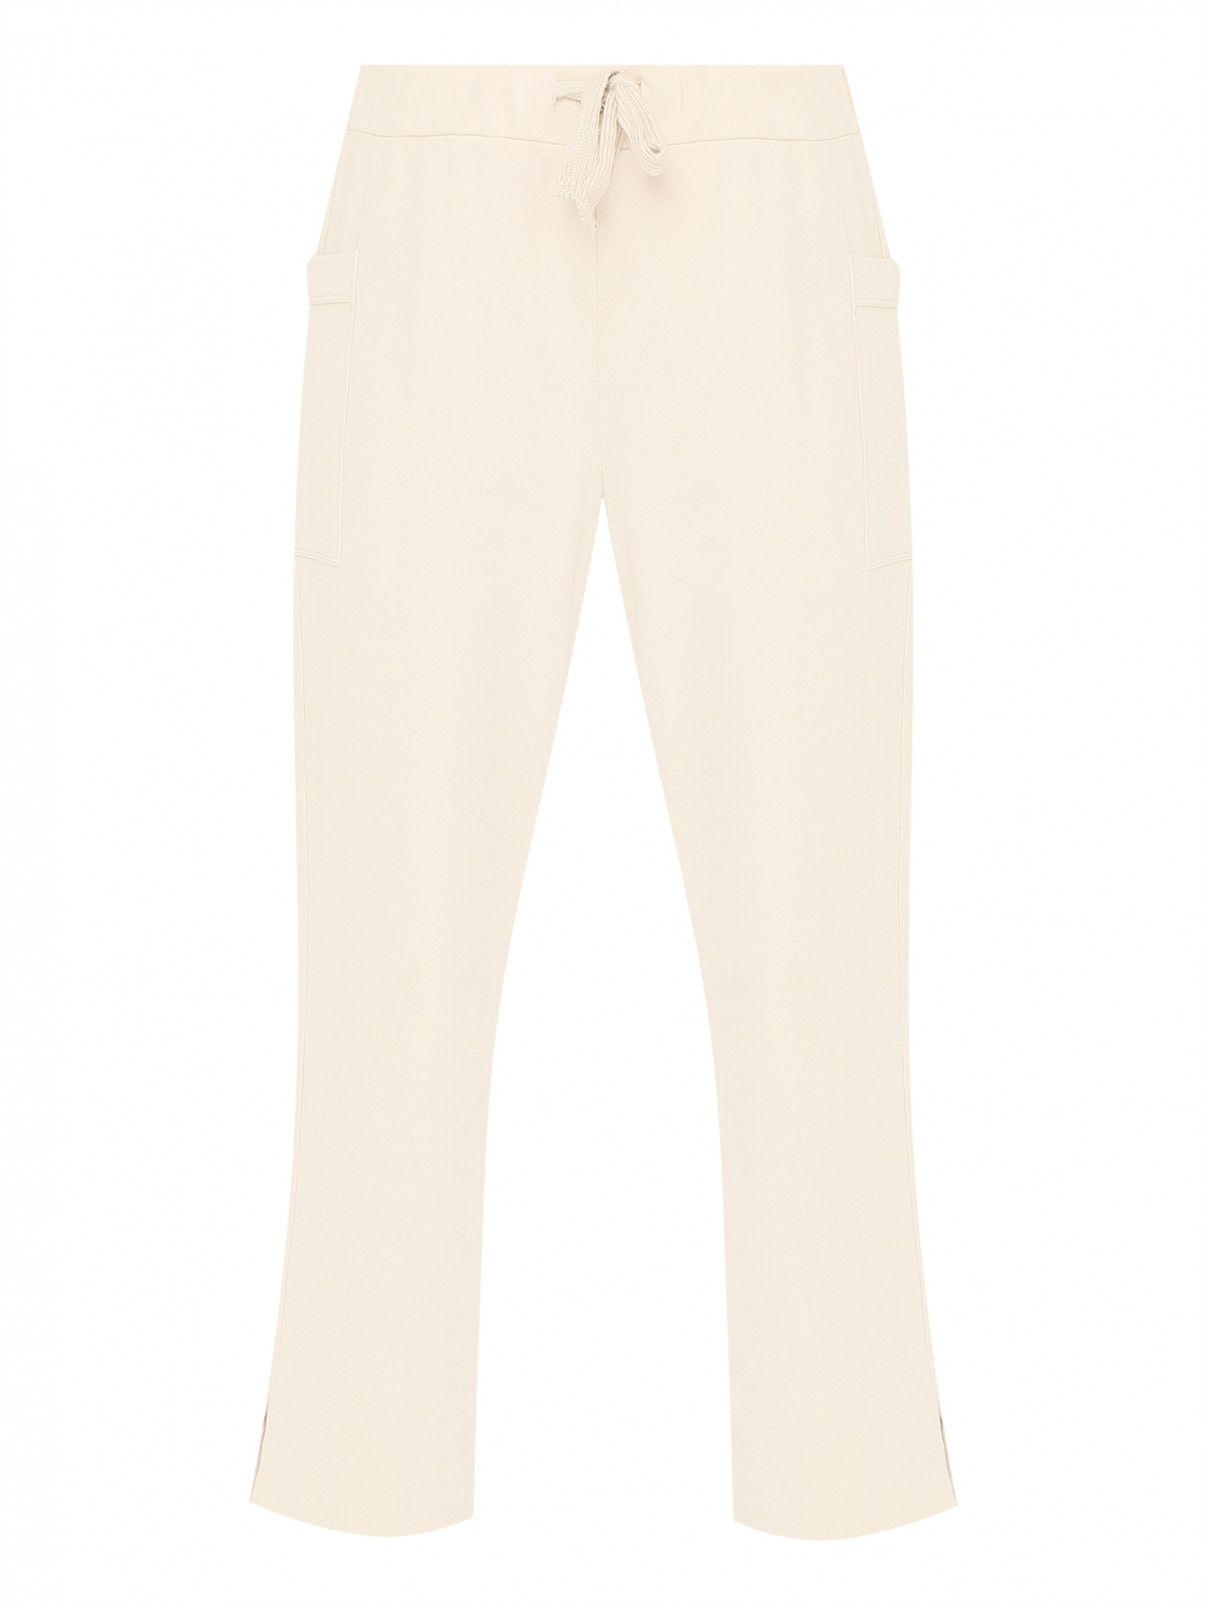 Трикотажные брюки с накладными карманами Alpha Studio  –  Общий вид  – Цвет:  Бежевый